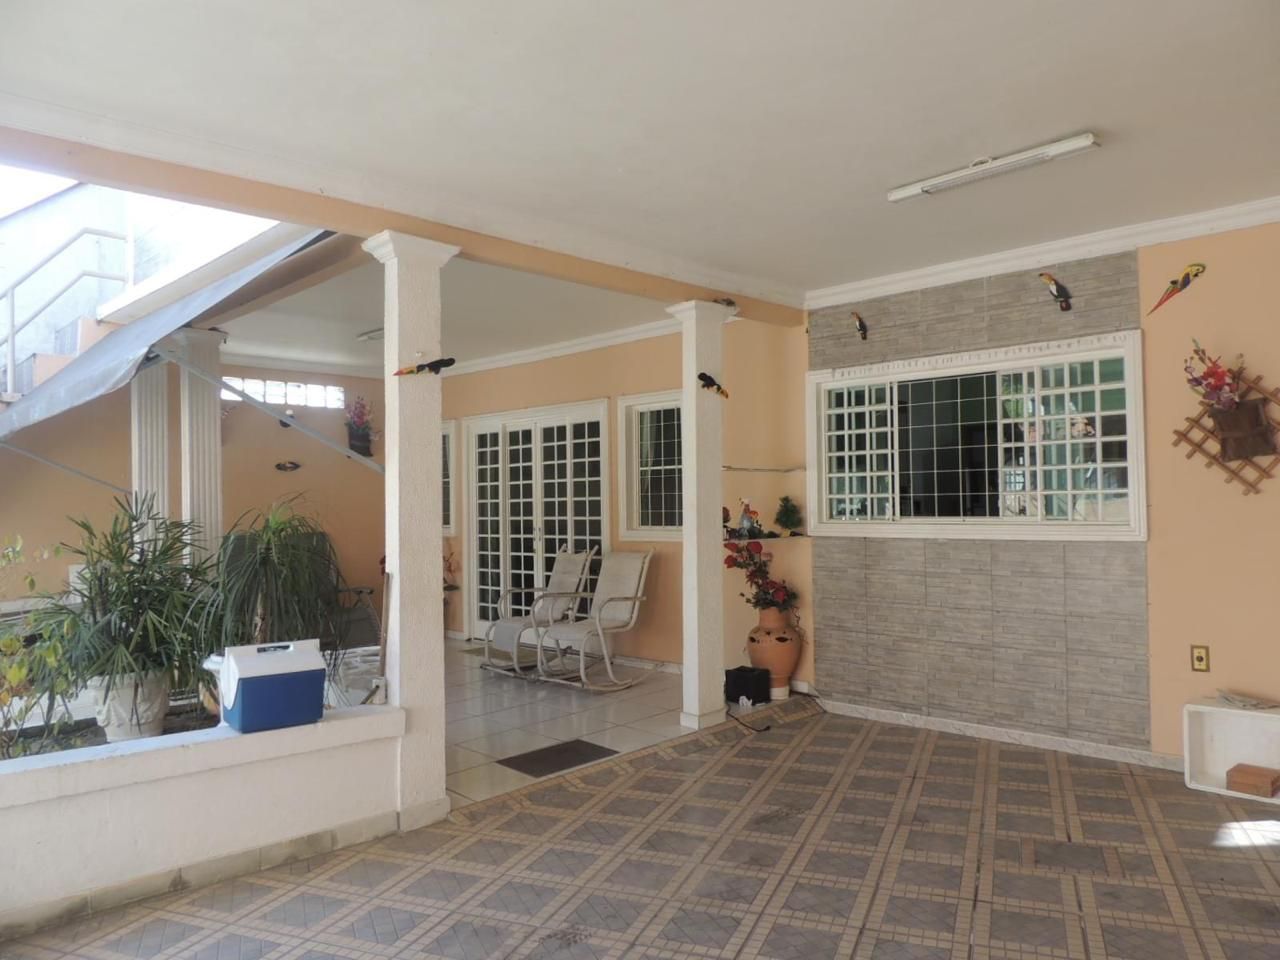 Casa com 5 dormitórios à venda, 300 m² por RS 650.000,00 - Flores - Manaus-AM